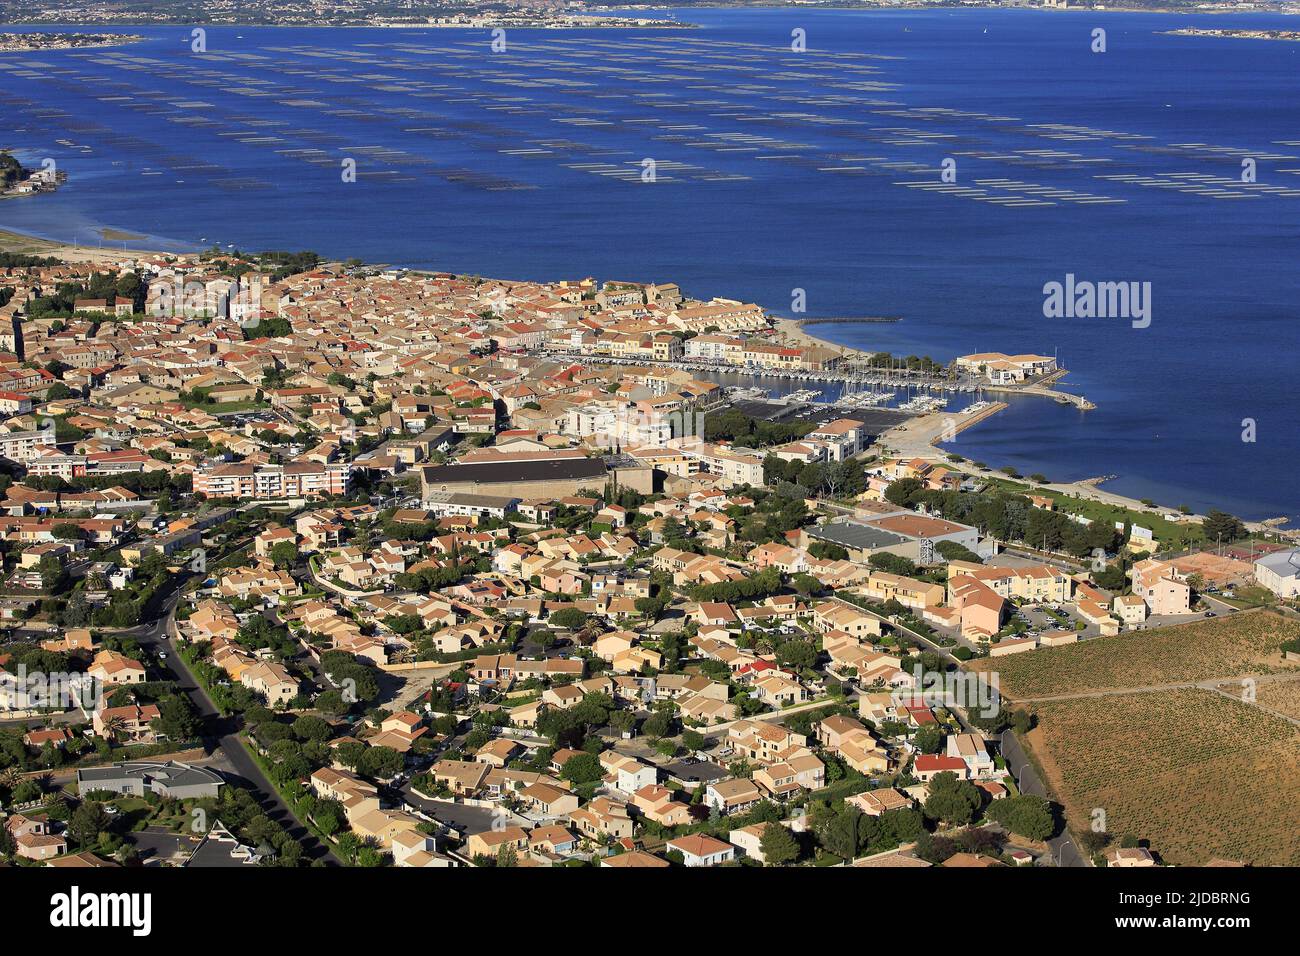 Francia, Hérault, Mèze, la ciudad portuaria mediterránea, situado a orillas del Etang de Thau con sus parques tiene conchas, (foto aérea) Foto de stock